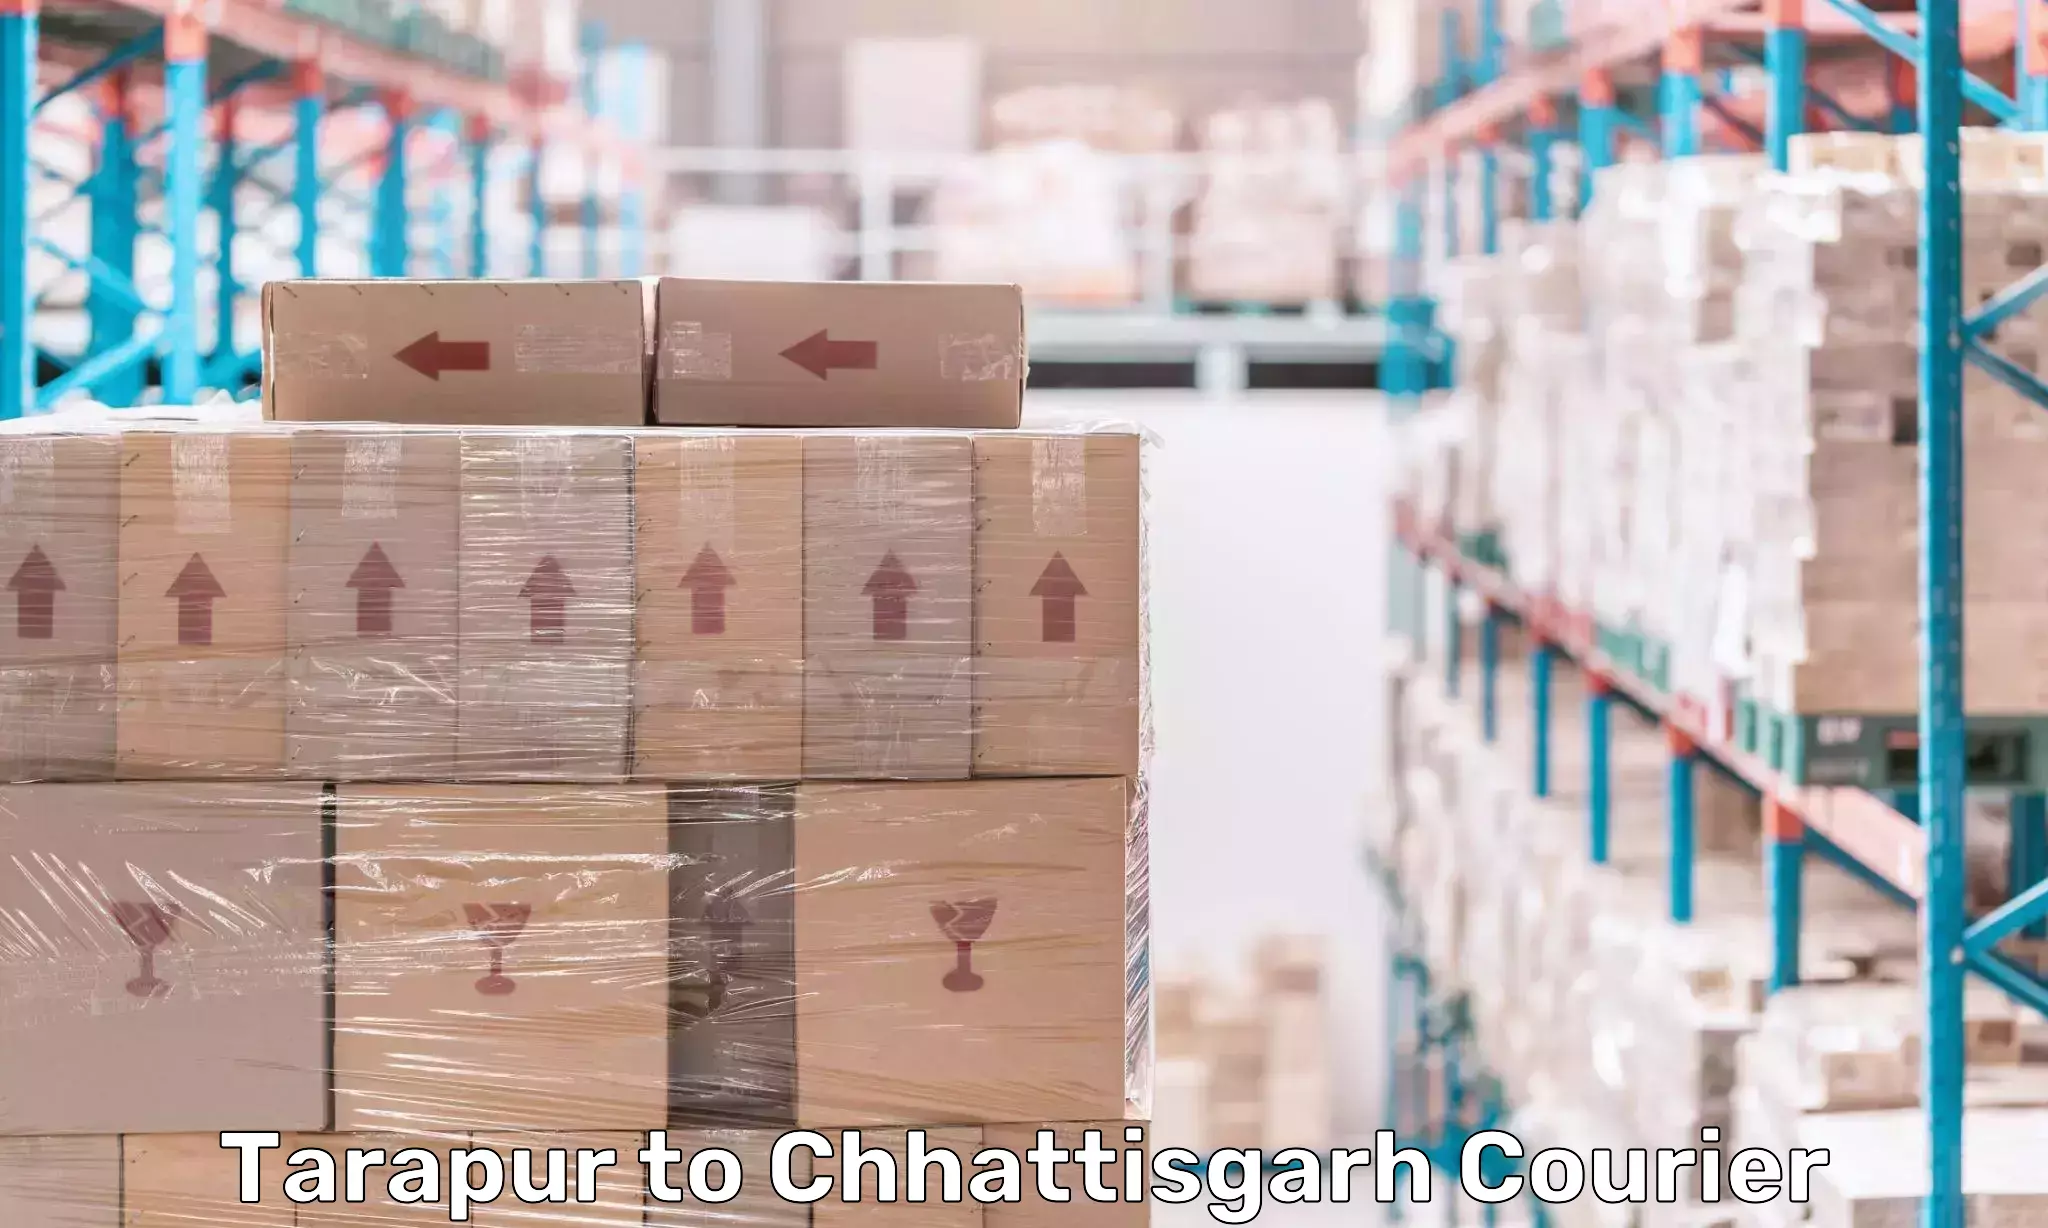 Digital shipping tools Tarapur to Chhattisgarh